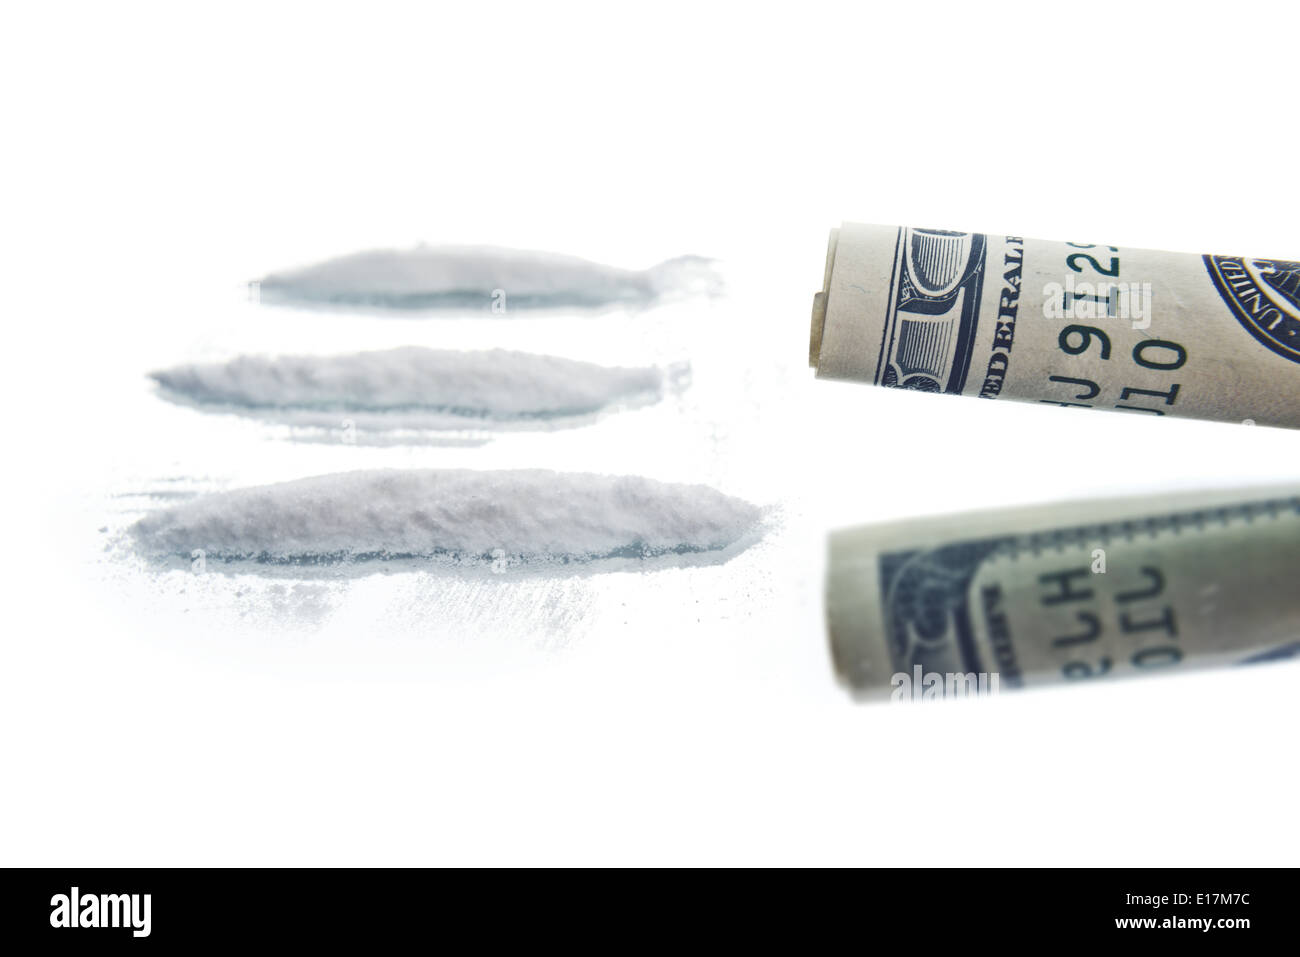 La cocaïne poudre drogues activités et intégrée USA hundred dollar bill pour sniffingg. Concept de la toxicomanie. Banque D'Images